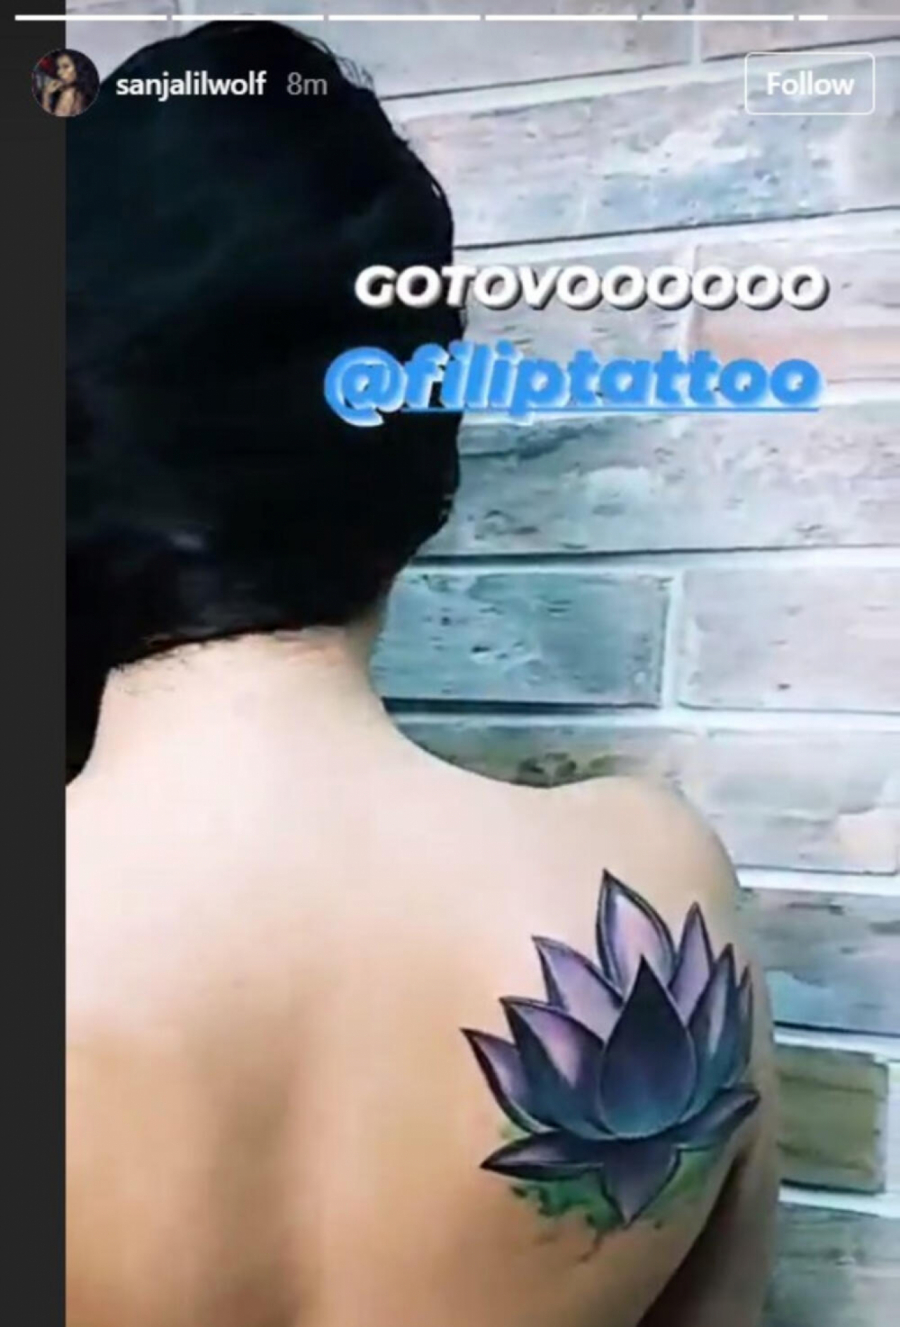 KAO OD MAJKE ROĐENA Skinula se Sanja Vučić i pokazala novu tetovažu kojom je ulepšala ovaj deo tela (FOTO/VIDEO)